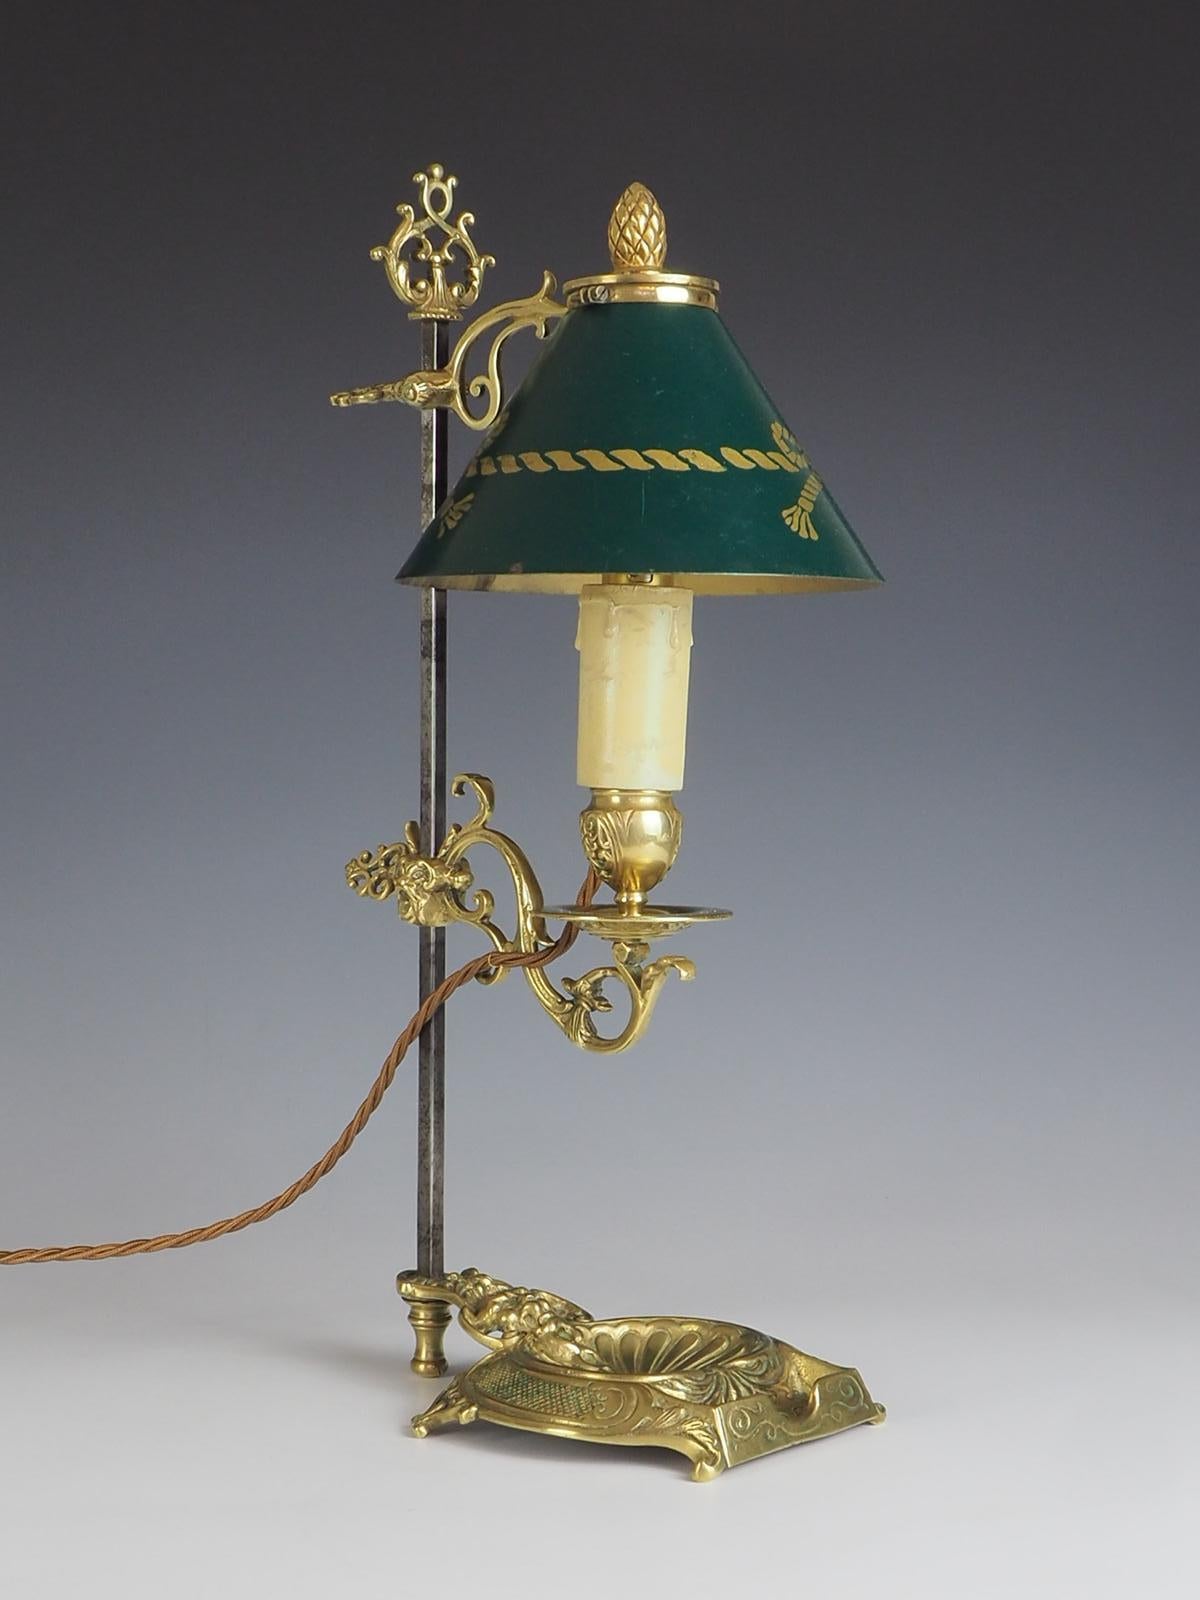 La lampe de table Bouilloute française ancienne est une pièce étonnante qui respire l'élégance et le charme. Fabriquée en laiton antique, cette lampe présente un design bouilloute traditionnel avec une seule lumière. Le point fort de cette lampe est